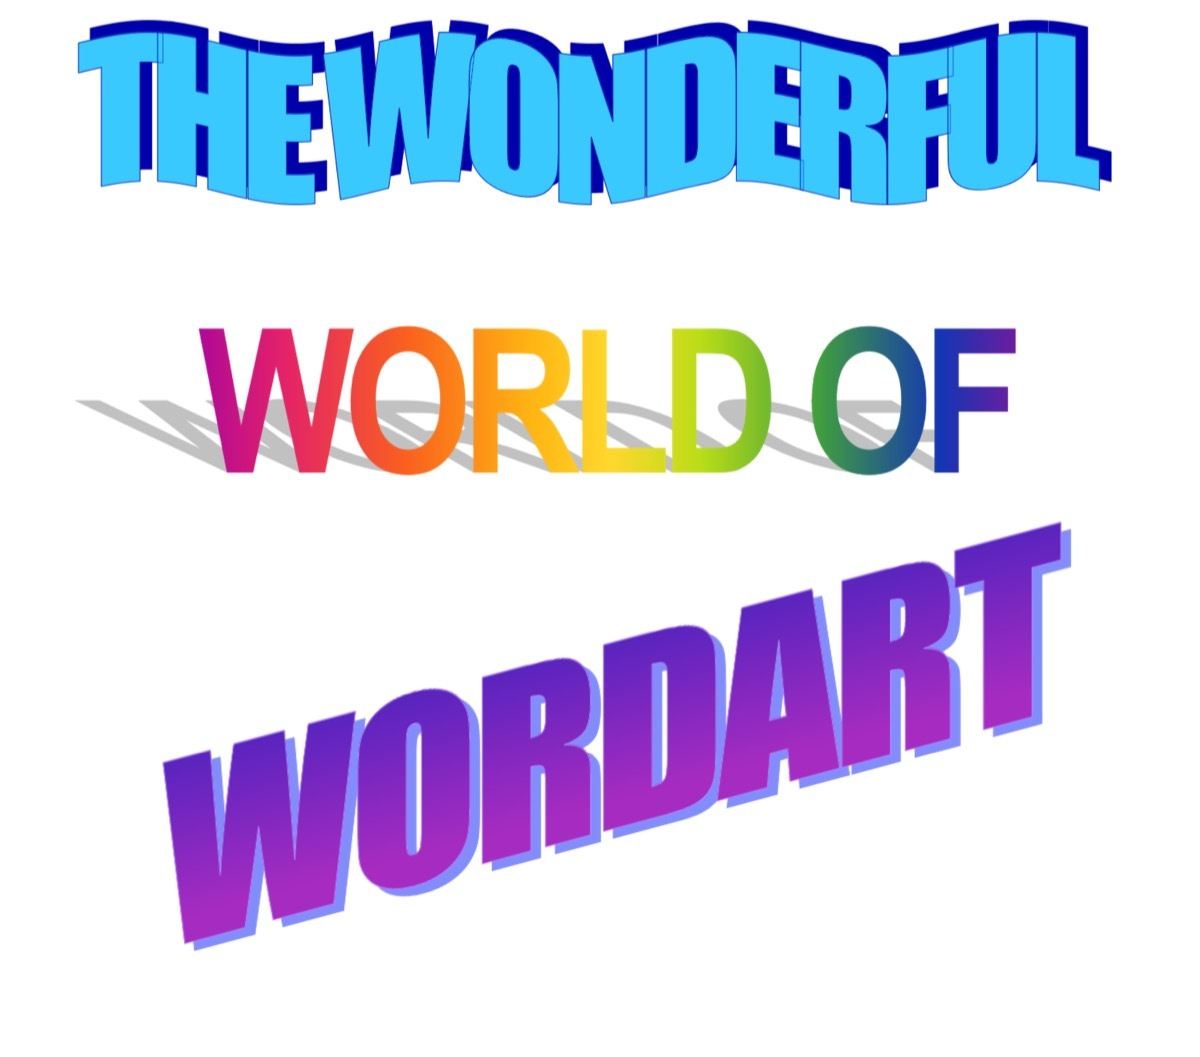 WordArt from 1990s